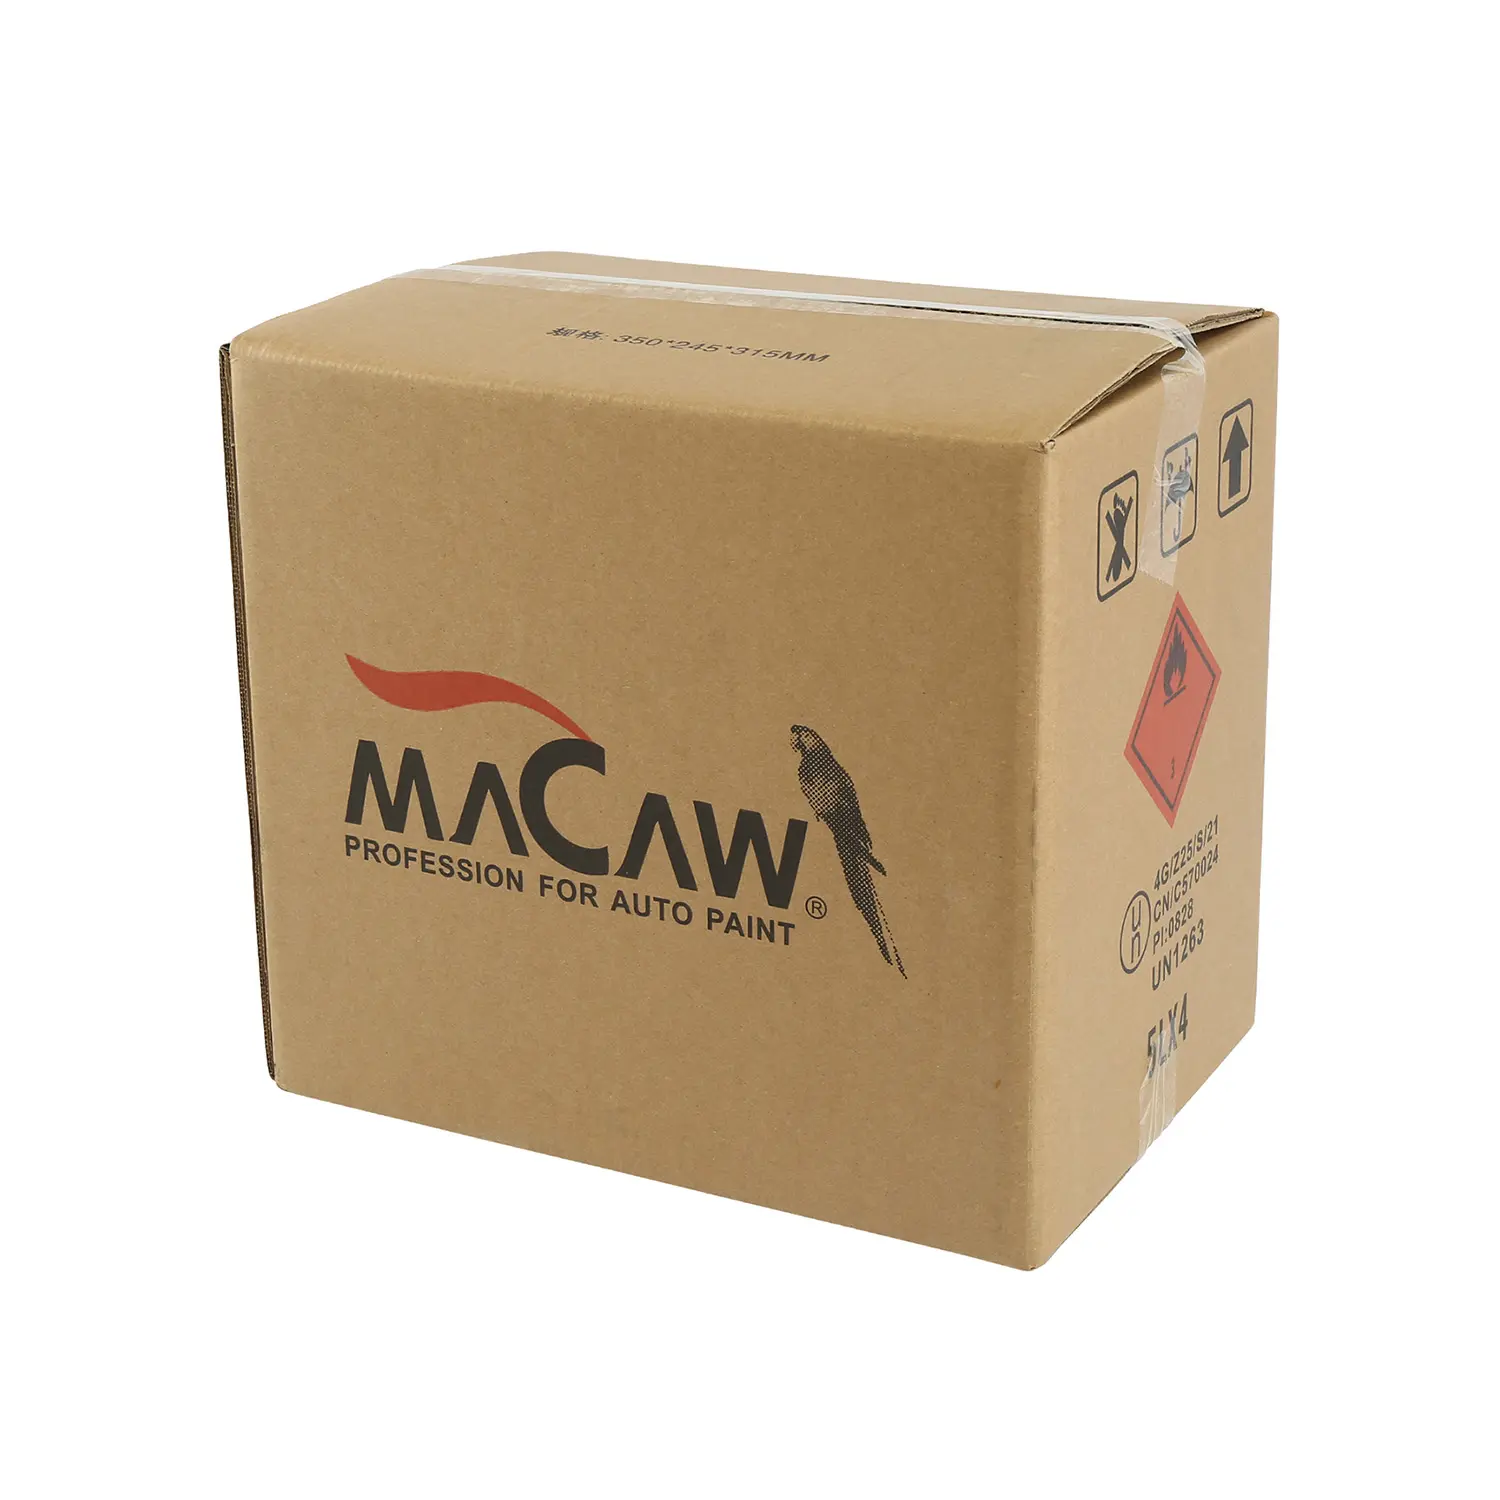 MACAW 1K solid color WSM153 Deep Maroon acrylic base coat car paint tinter color primer coat master shade mixing shade